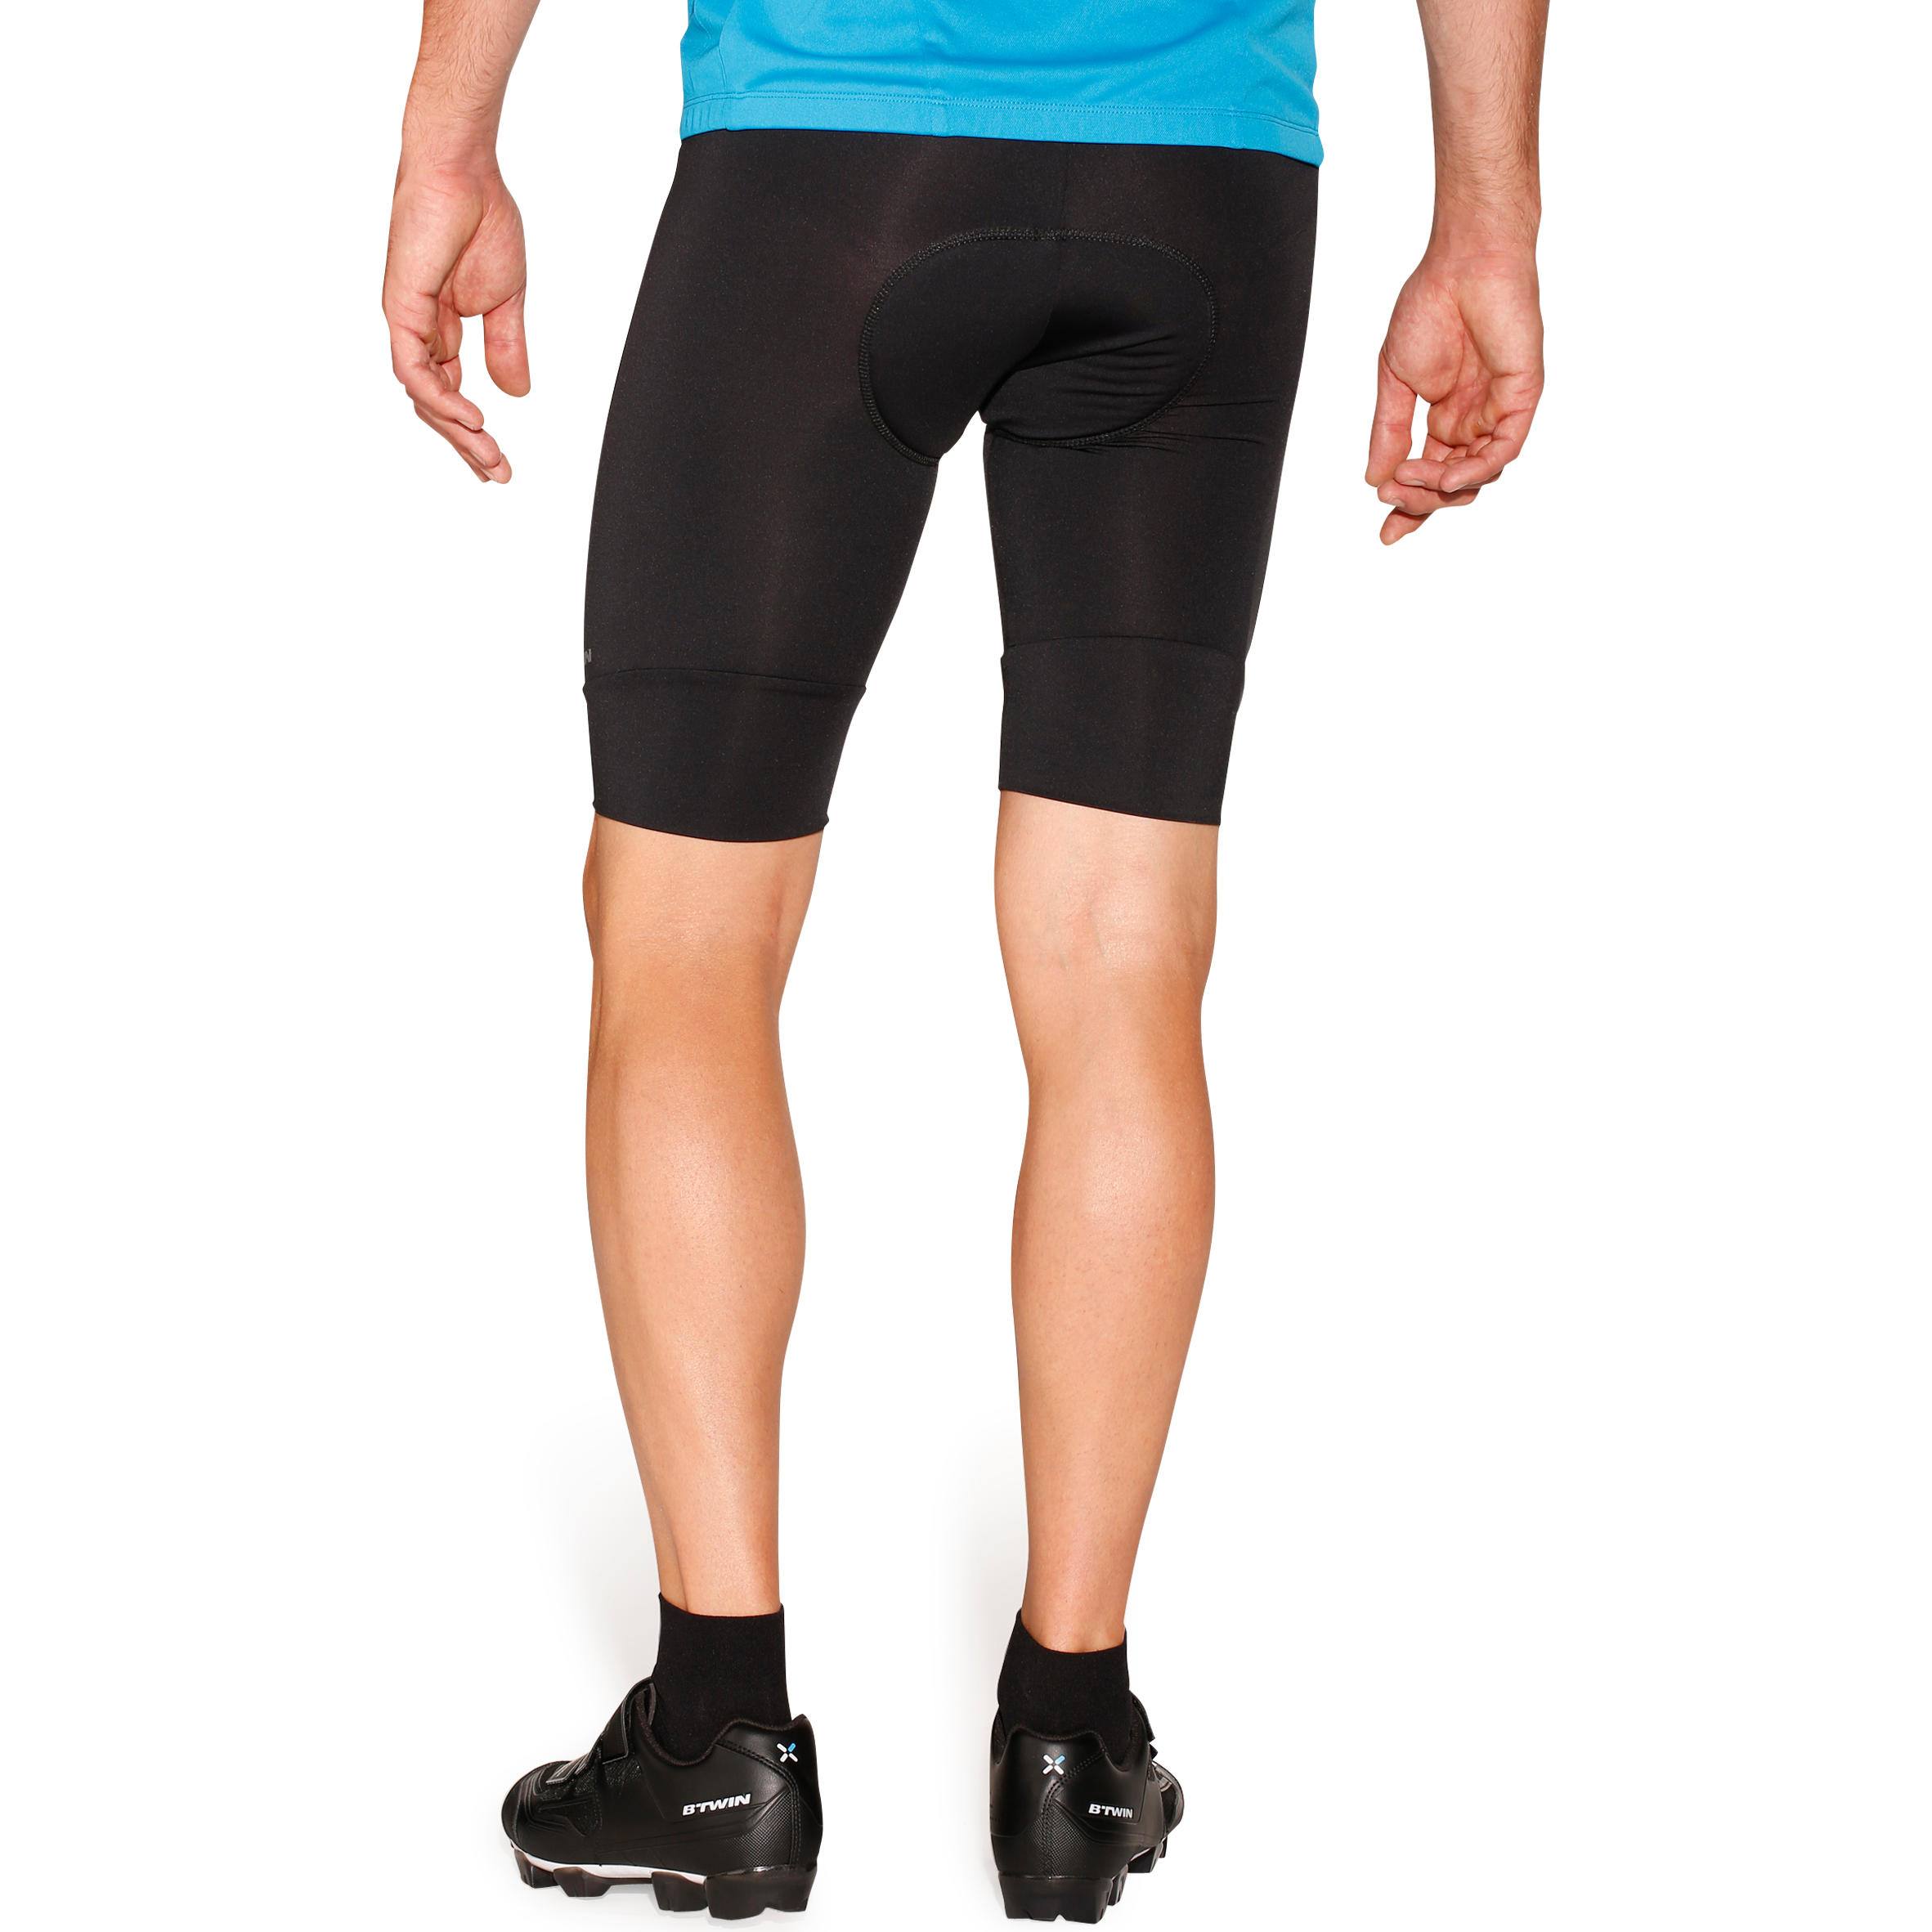 Cyclisme Maillot Manches Courtes+Gel 20D Dous-Vêtements Rembourrés Coolmax Shorts/Cuissard pour Homme Pantalon à Bretelle Vélo de Route VTT MTB